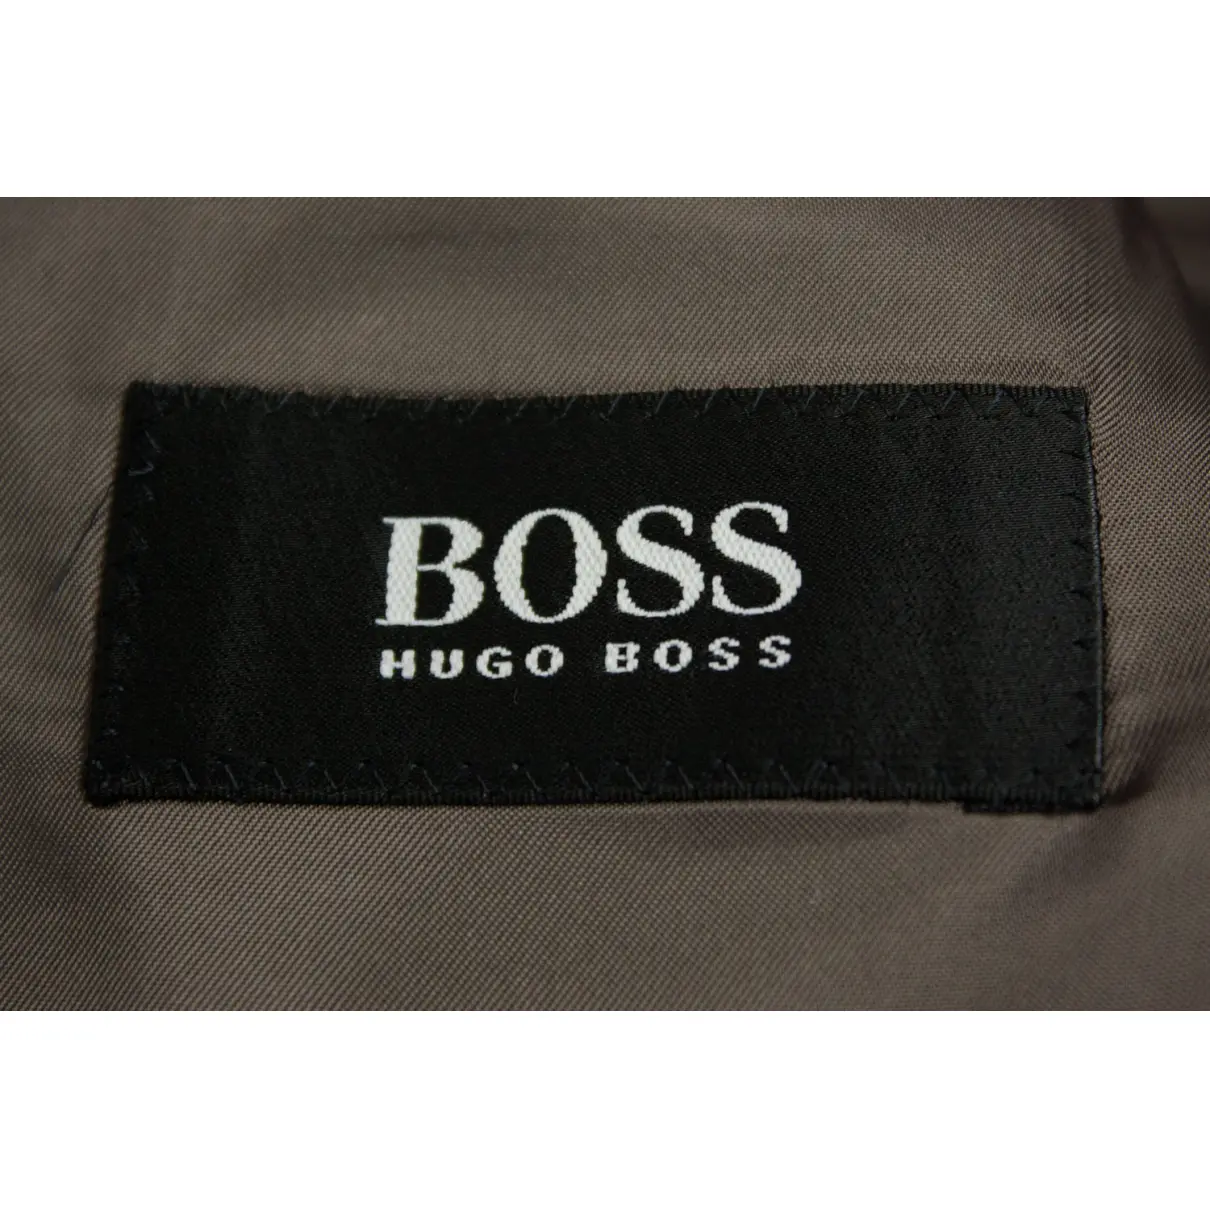 Wool vest Hugo Boss